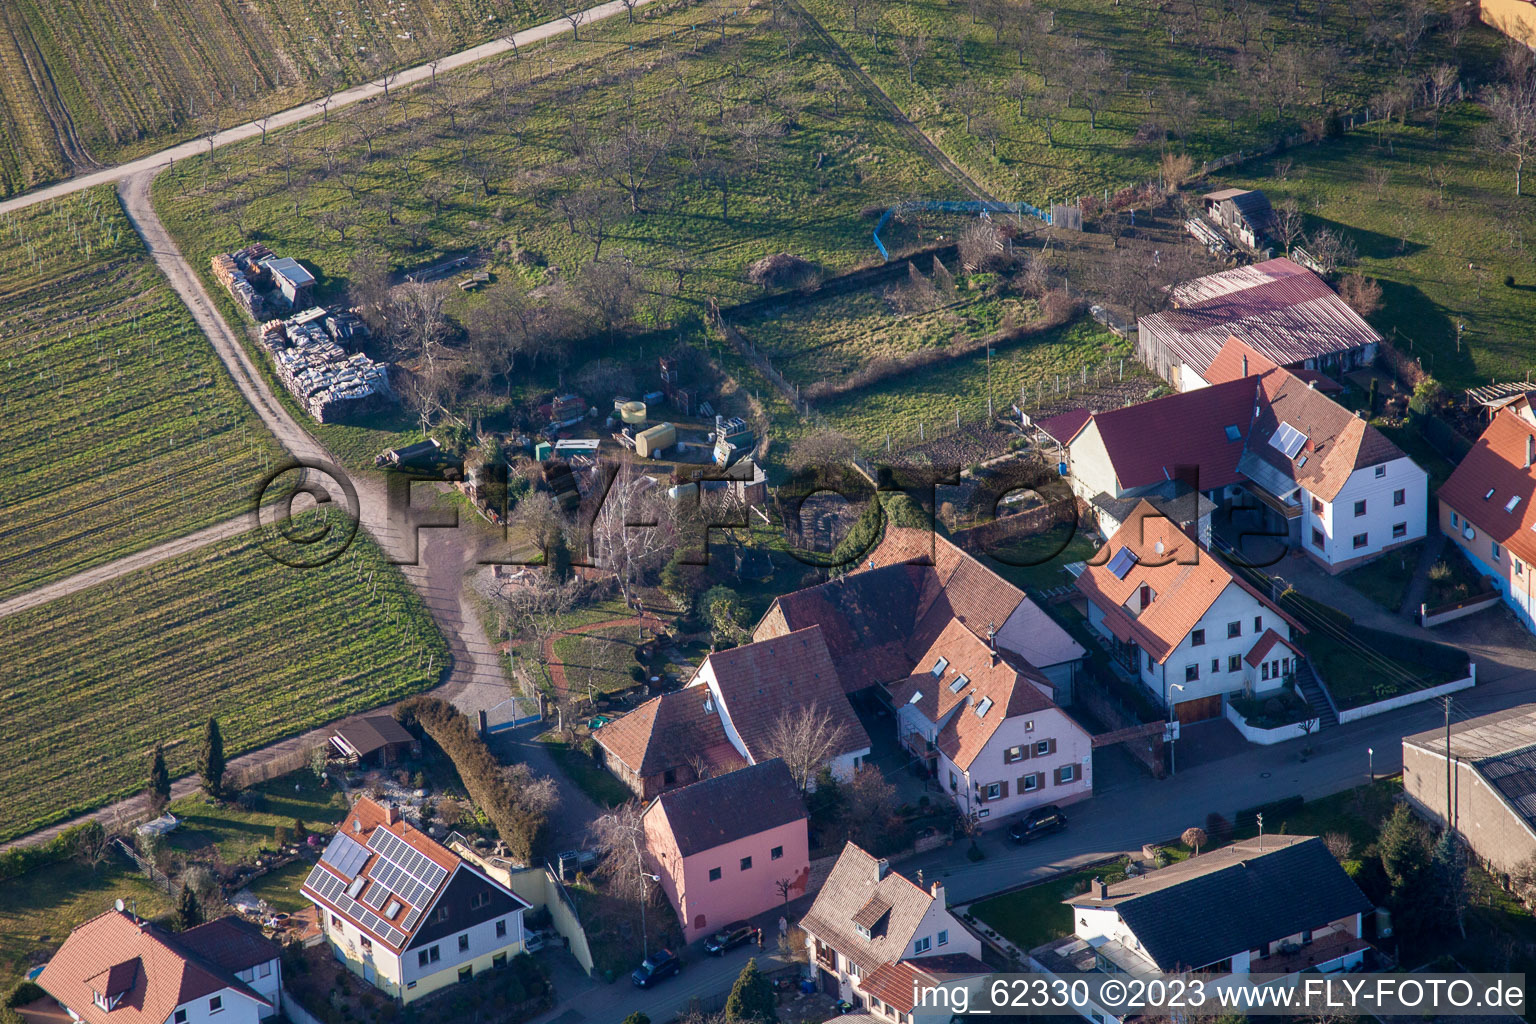 District Schweigen in Schweigen-Rechtenbach in the state Rhineland-Palatinate, Germany from a drone